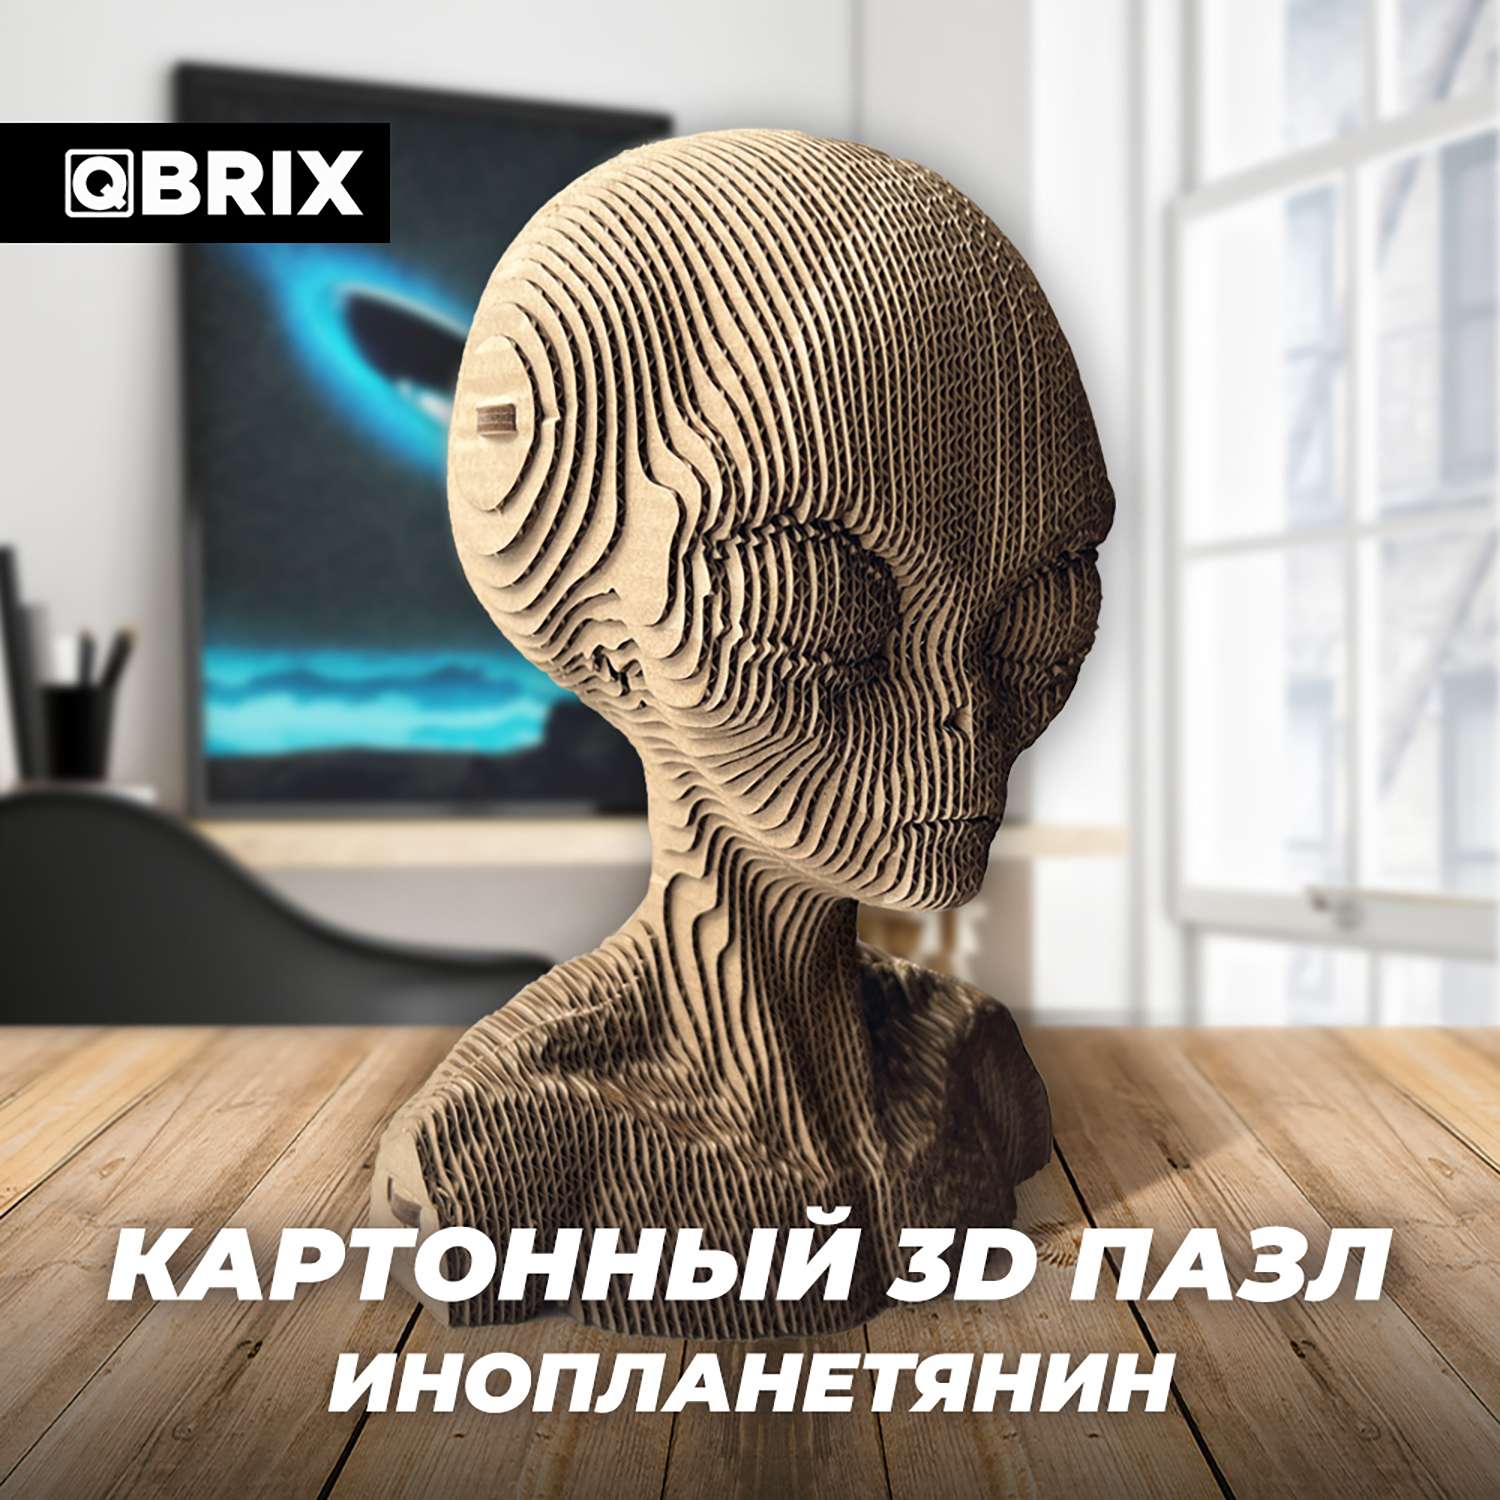 Конструктор QBRIX 3D картонный Инопланетянин 20024 20024 - фото 6